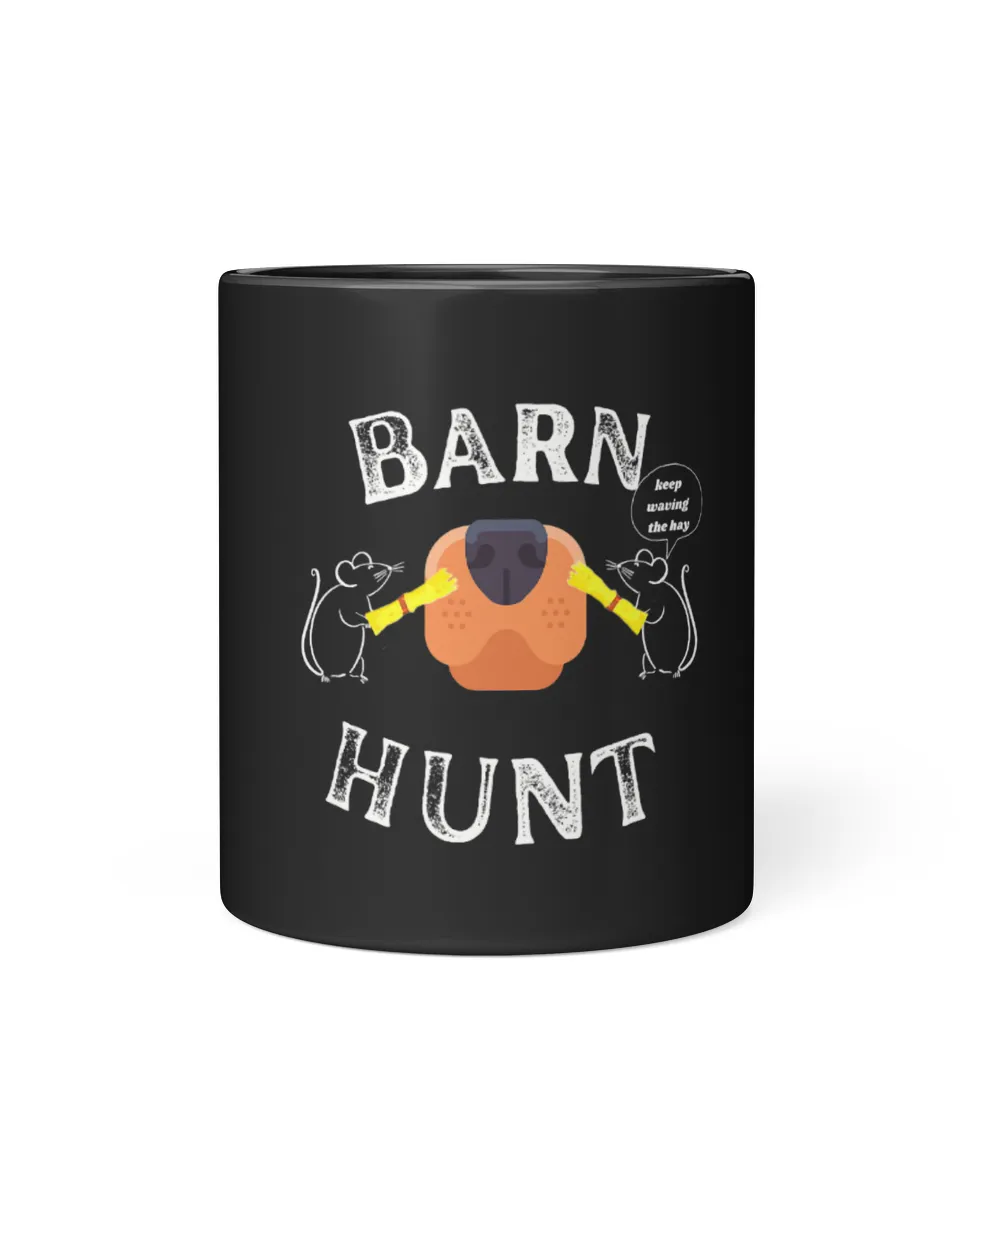 Funny Barn Hunt keep waving the Hay